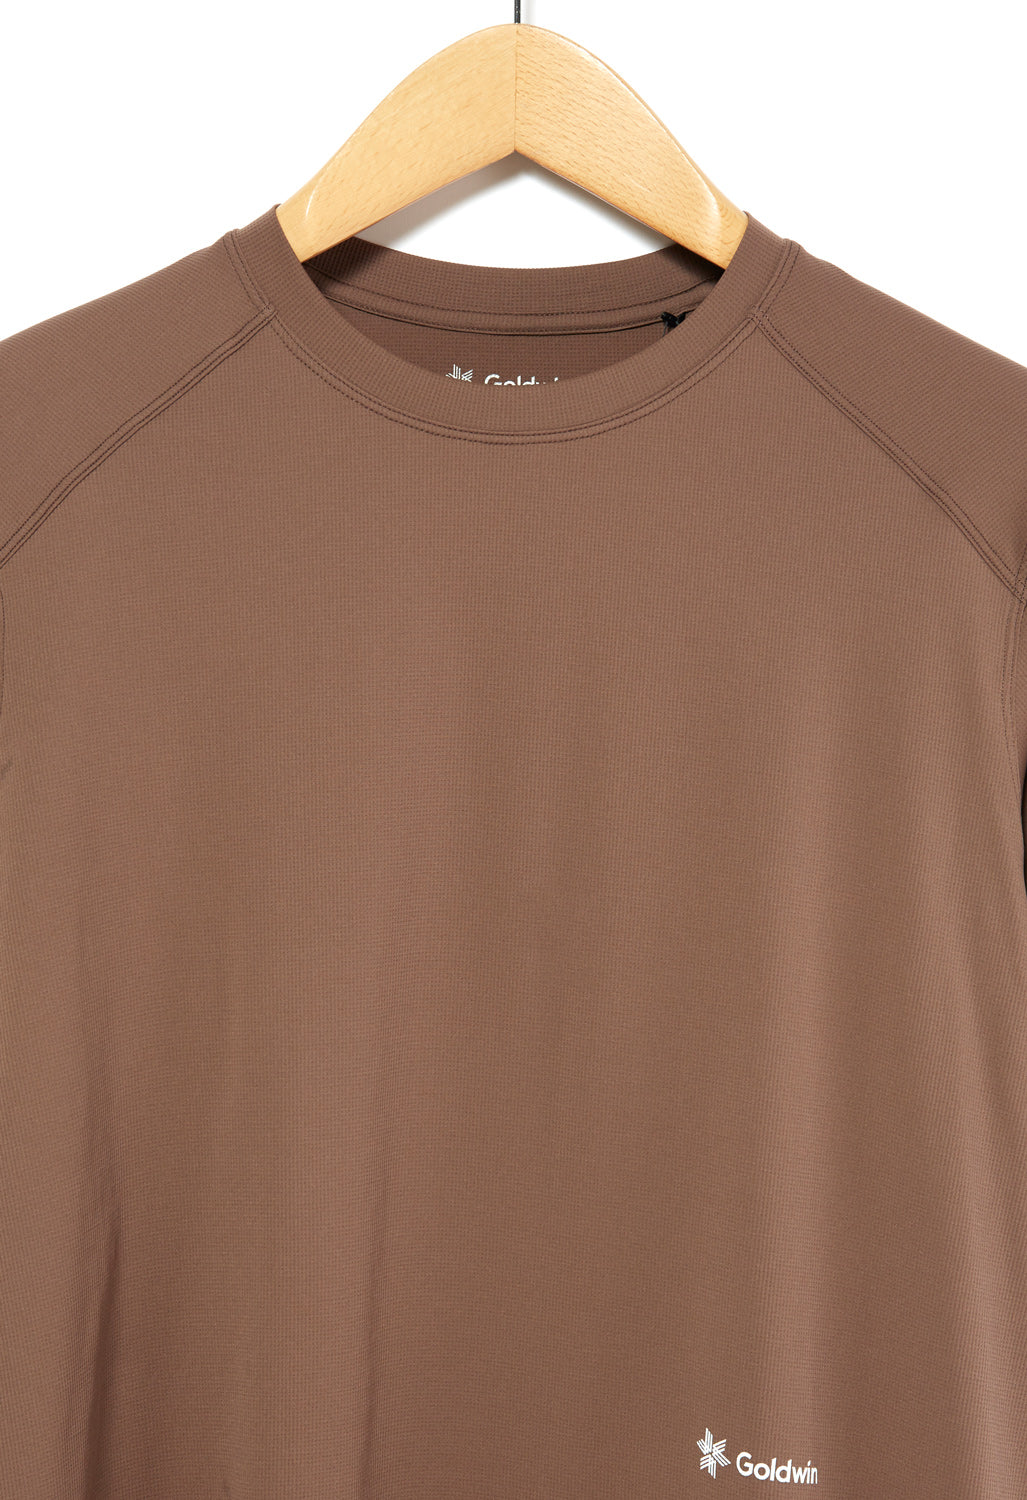 Goldwin Men's WF-Dry T-shirt - Acorn Brown